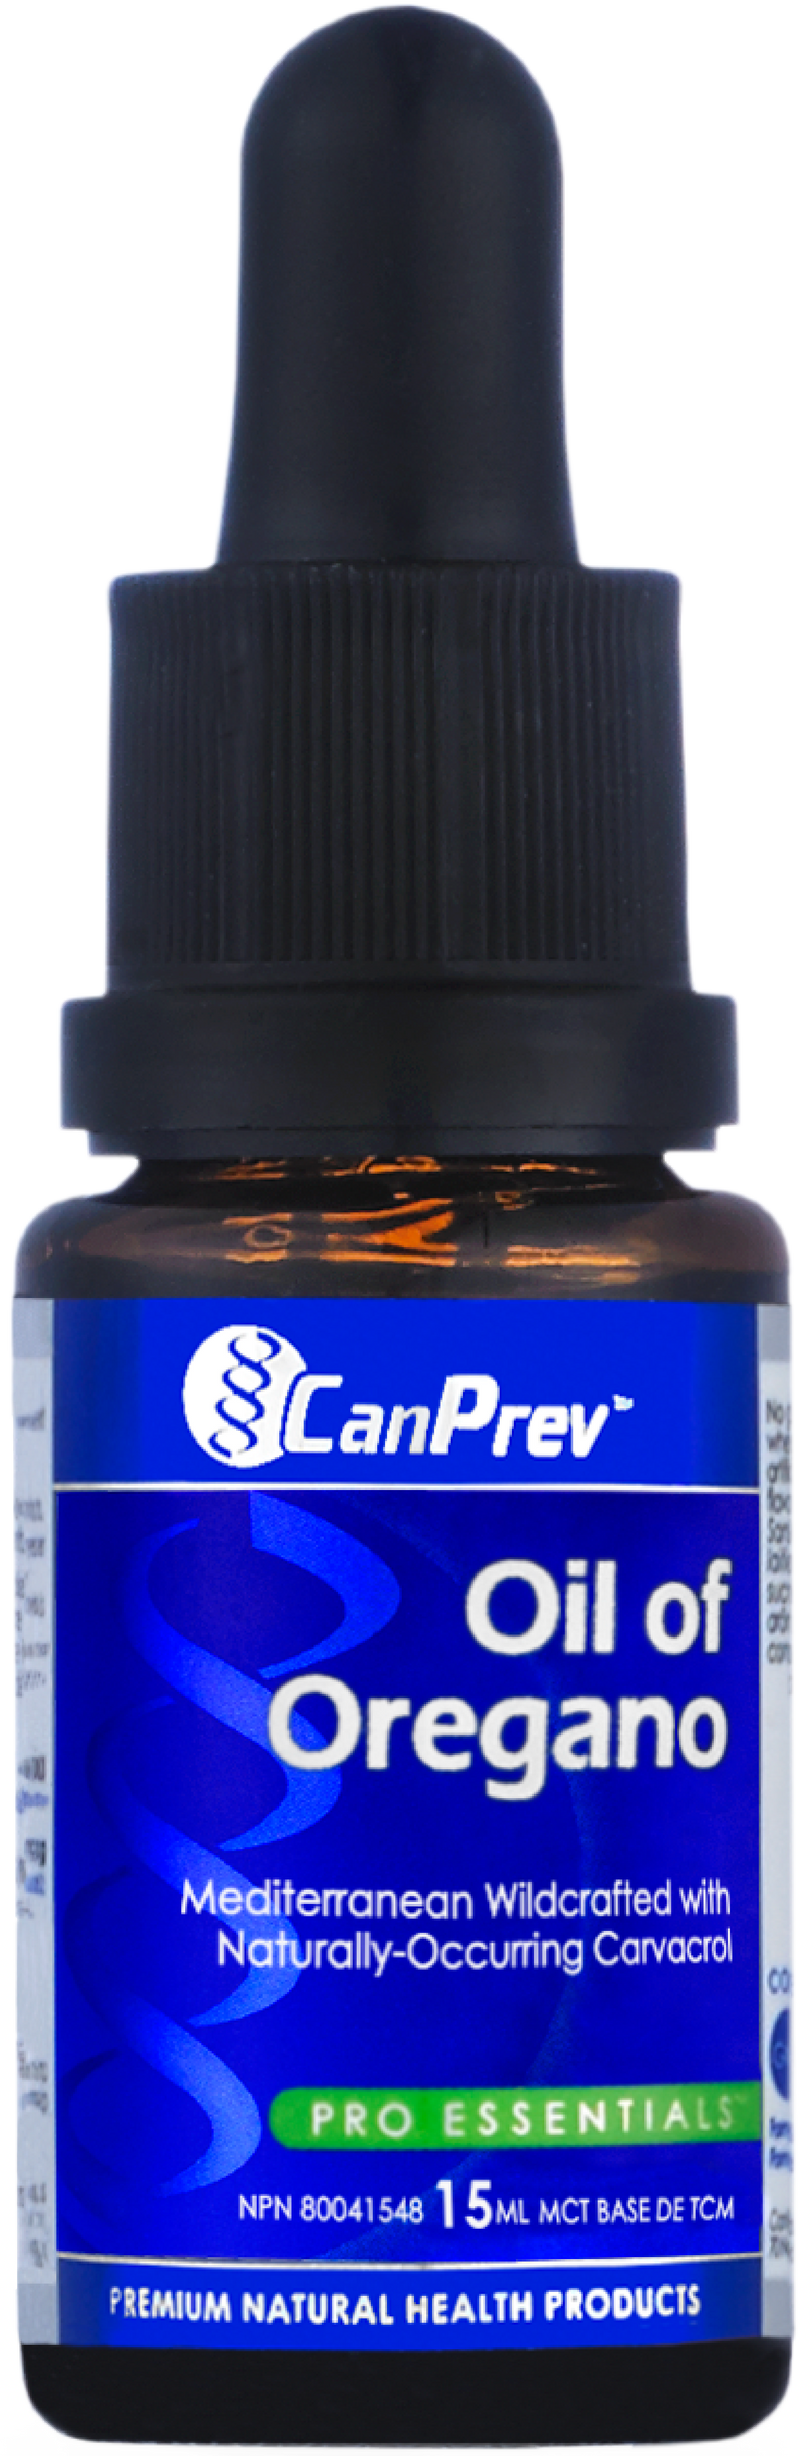 CanPrev Pro Essentials Oil of Oregano